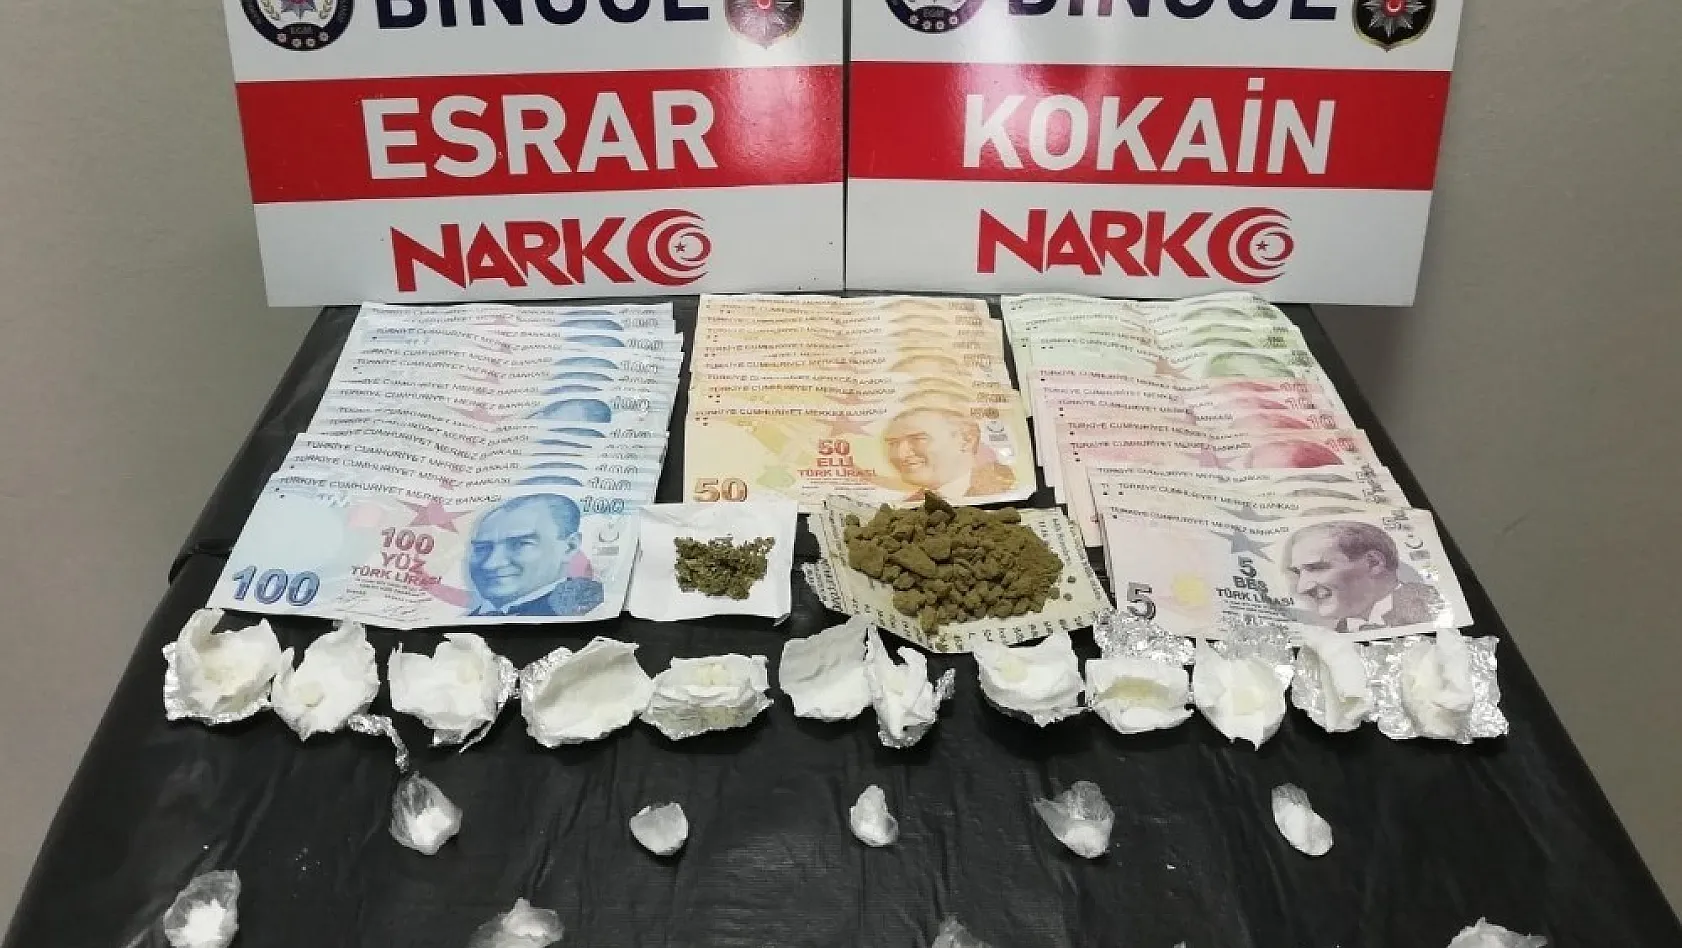 Bingöl'de uyuşturucu operasyonları:  3 tutuklama 